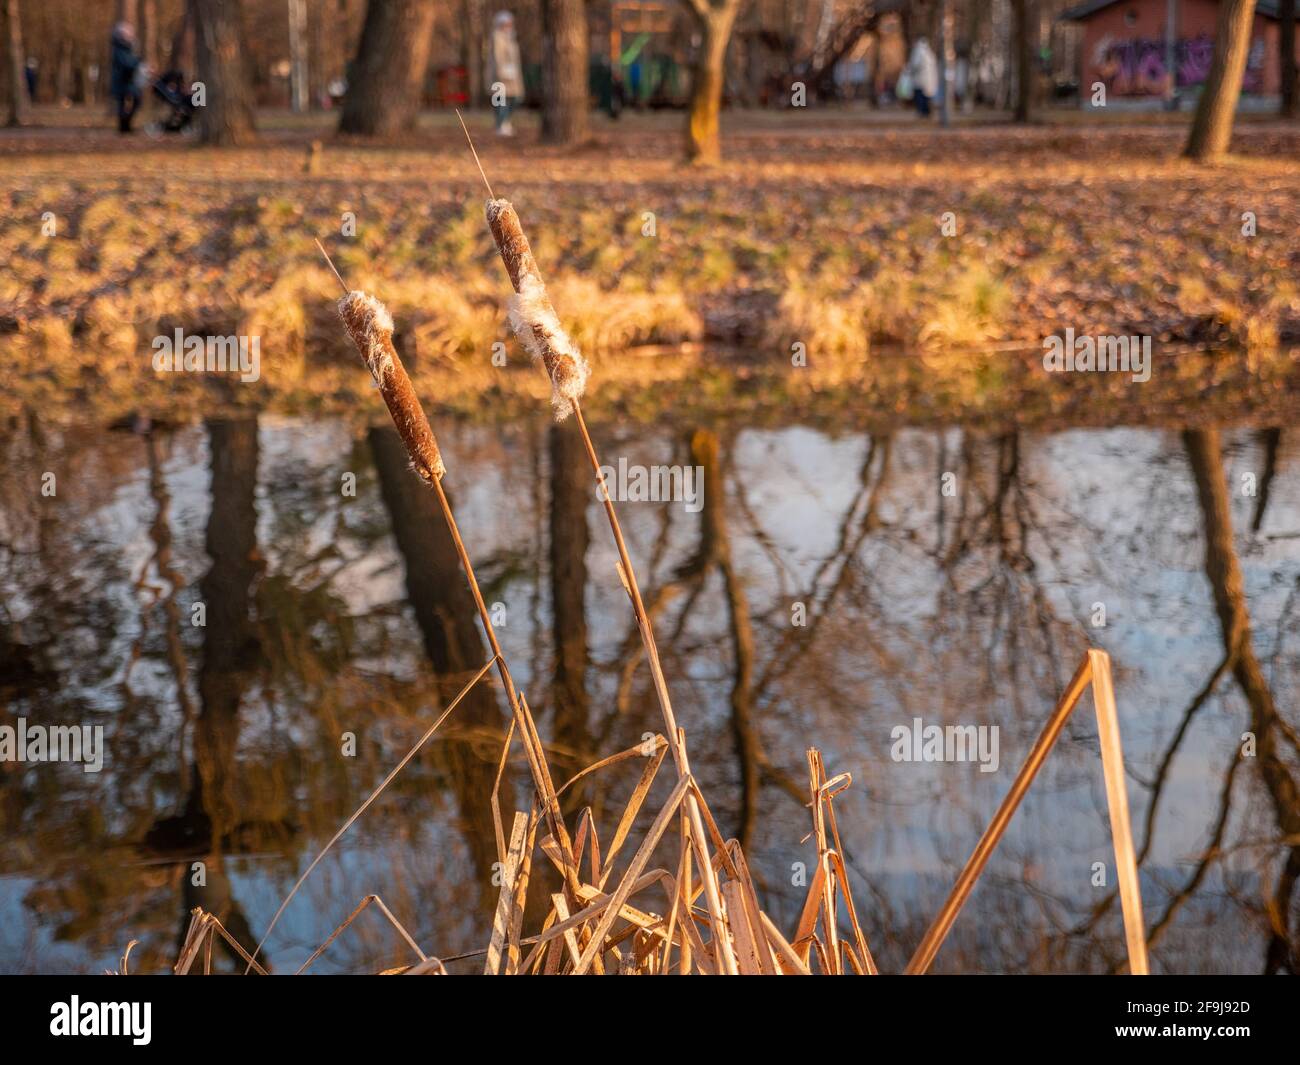 Bulrush creciendo cerca de un lago tranquilo con árboles y reflejo del cielo en el agua. Parque urbano a finales de otoño o invierno cálido. Hermosos colores amarillos en la naturaleza. Foto de stock